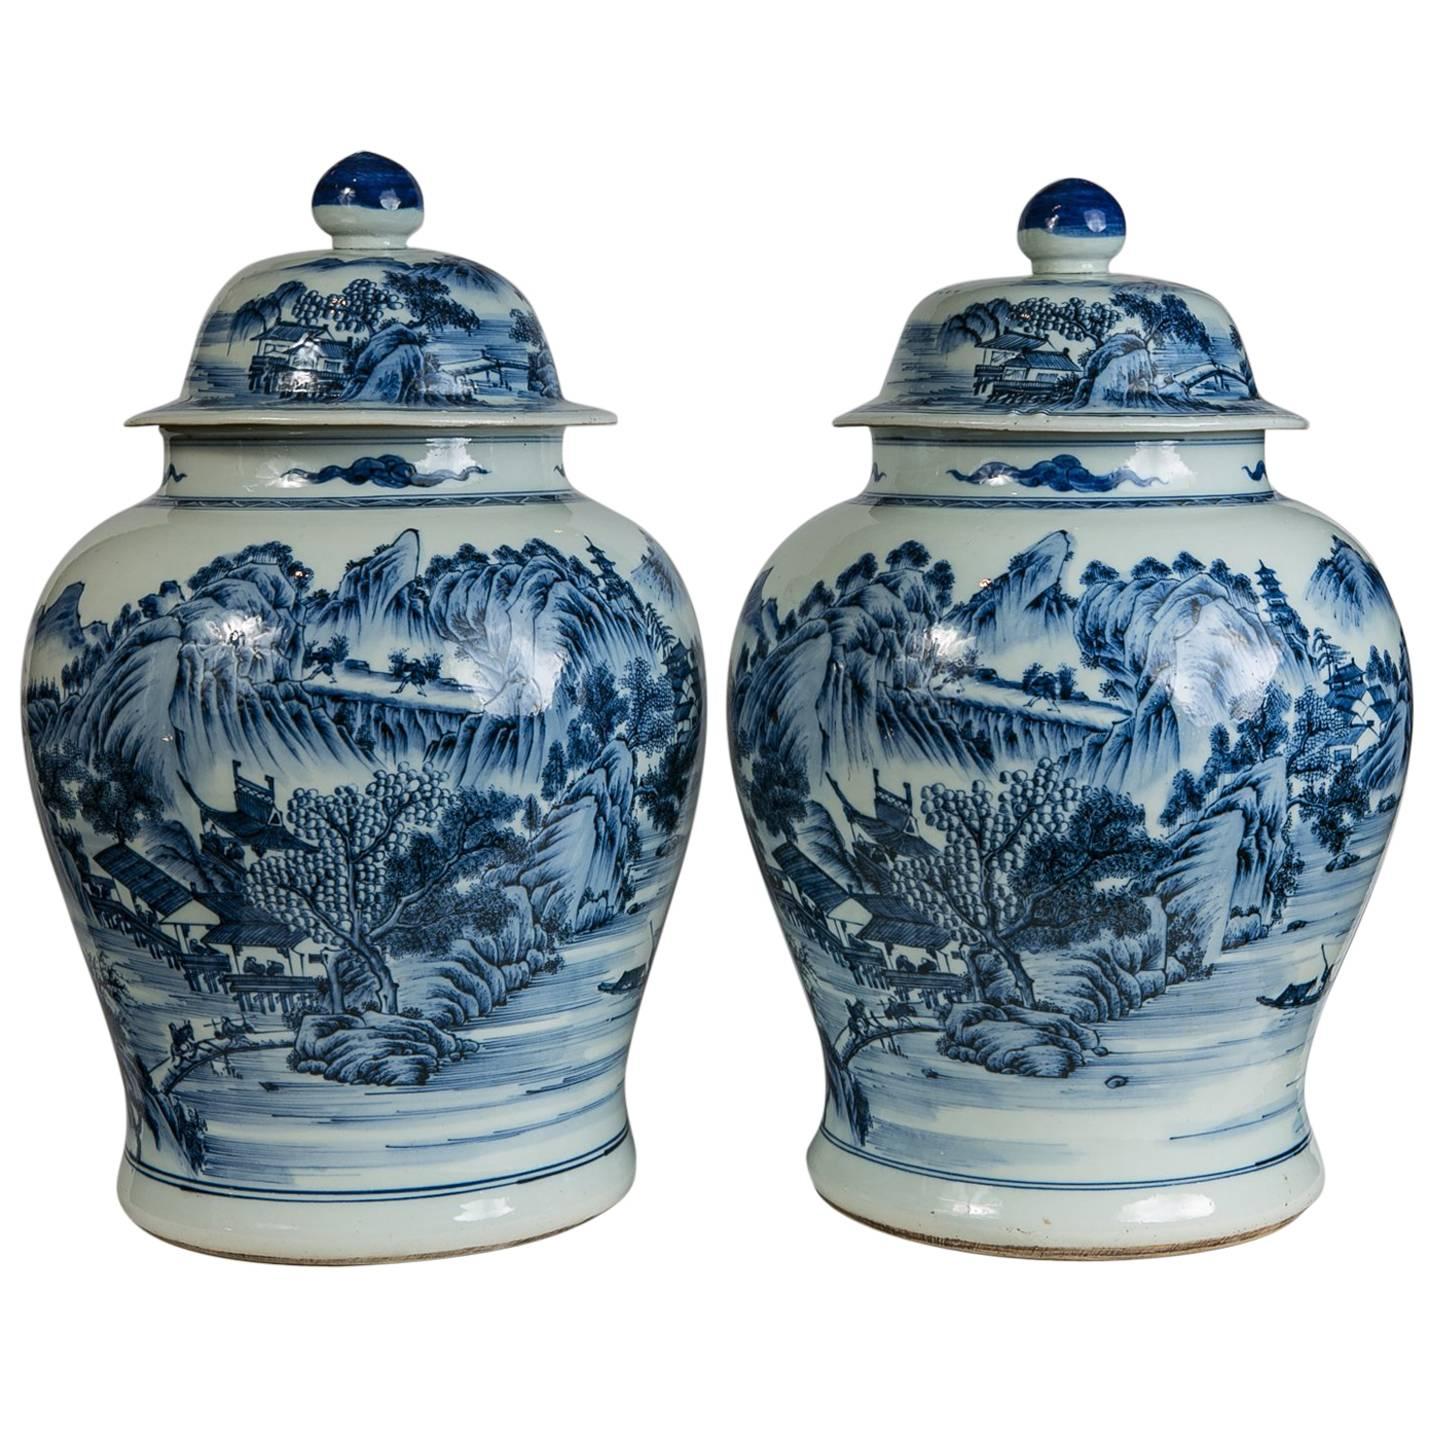 Blue and White Porcelain Ginger Jars